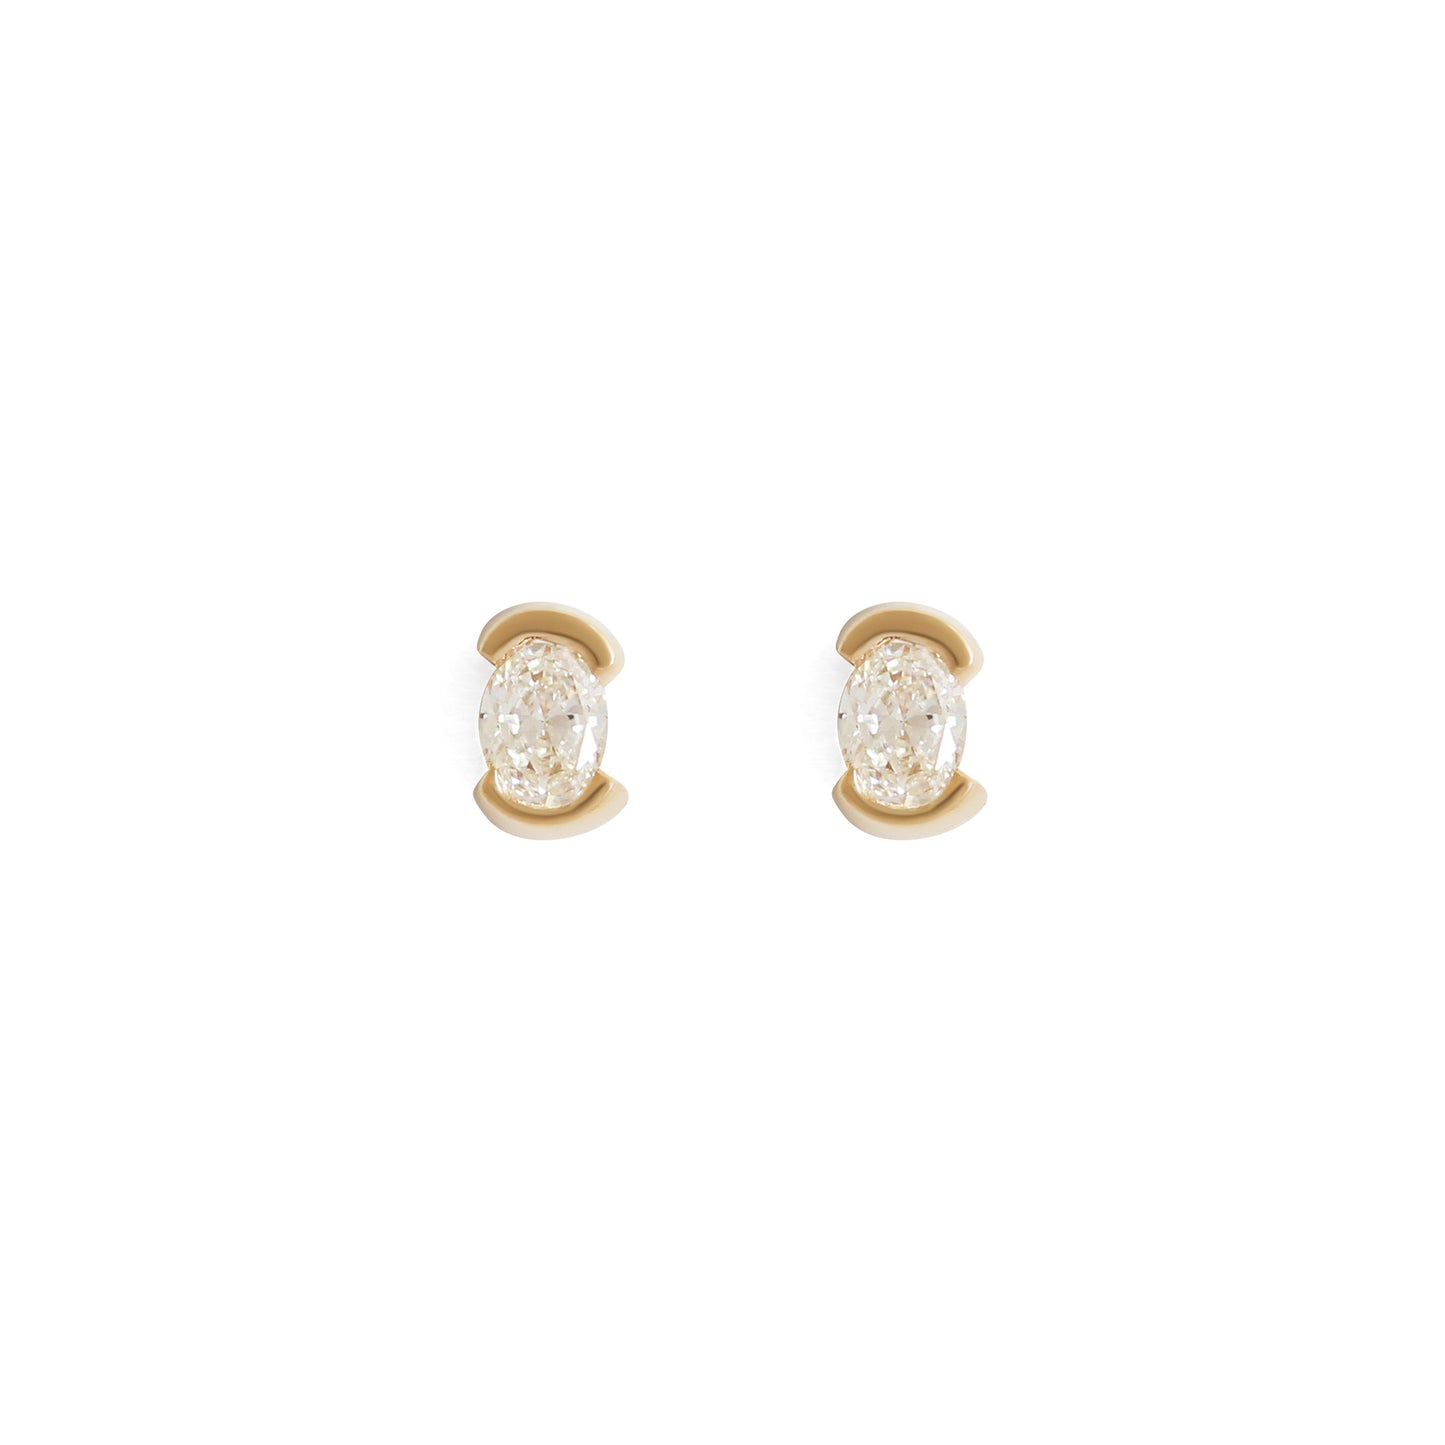 Load image into Gallery viewer, Split Bezel Earring / Lab Oval Diamond - Goldpoint Studio - Greenpoint, Brooklyn - Fine Jewelry
